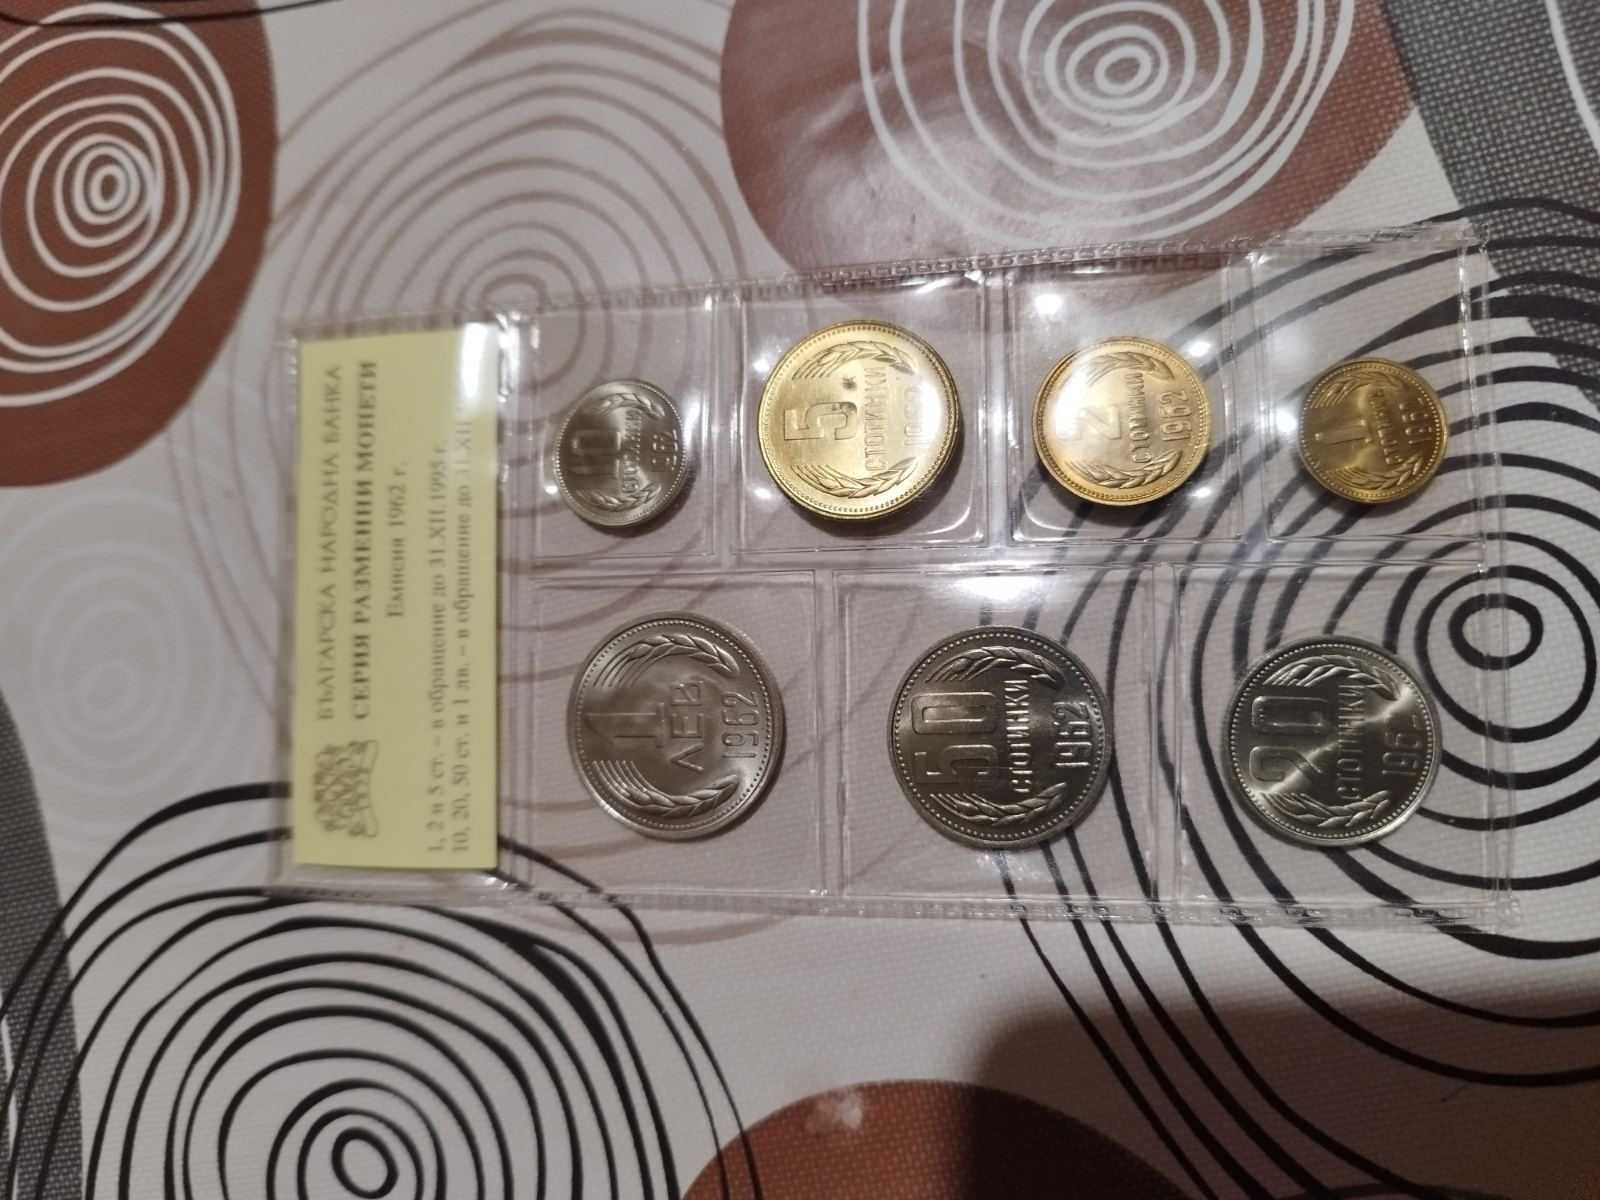 БГ-монети със сертификат от БНБ
1, 2, 5, 10, 20, 50 стотинки и 1 лев.